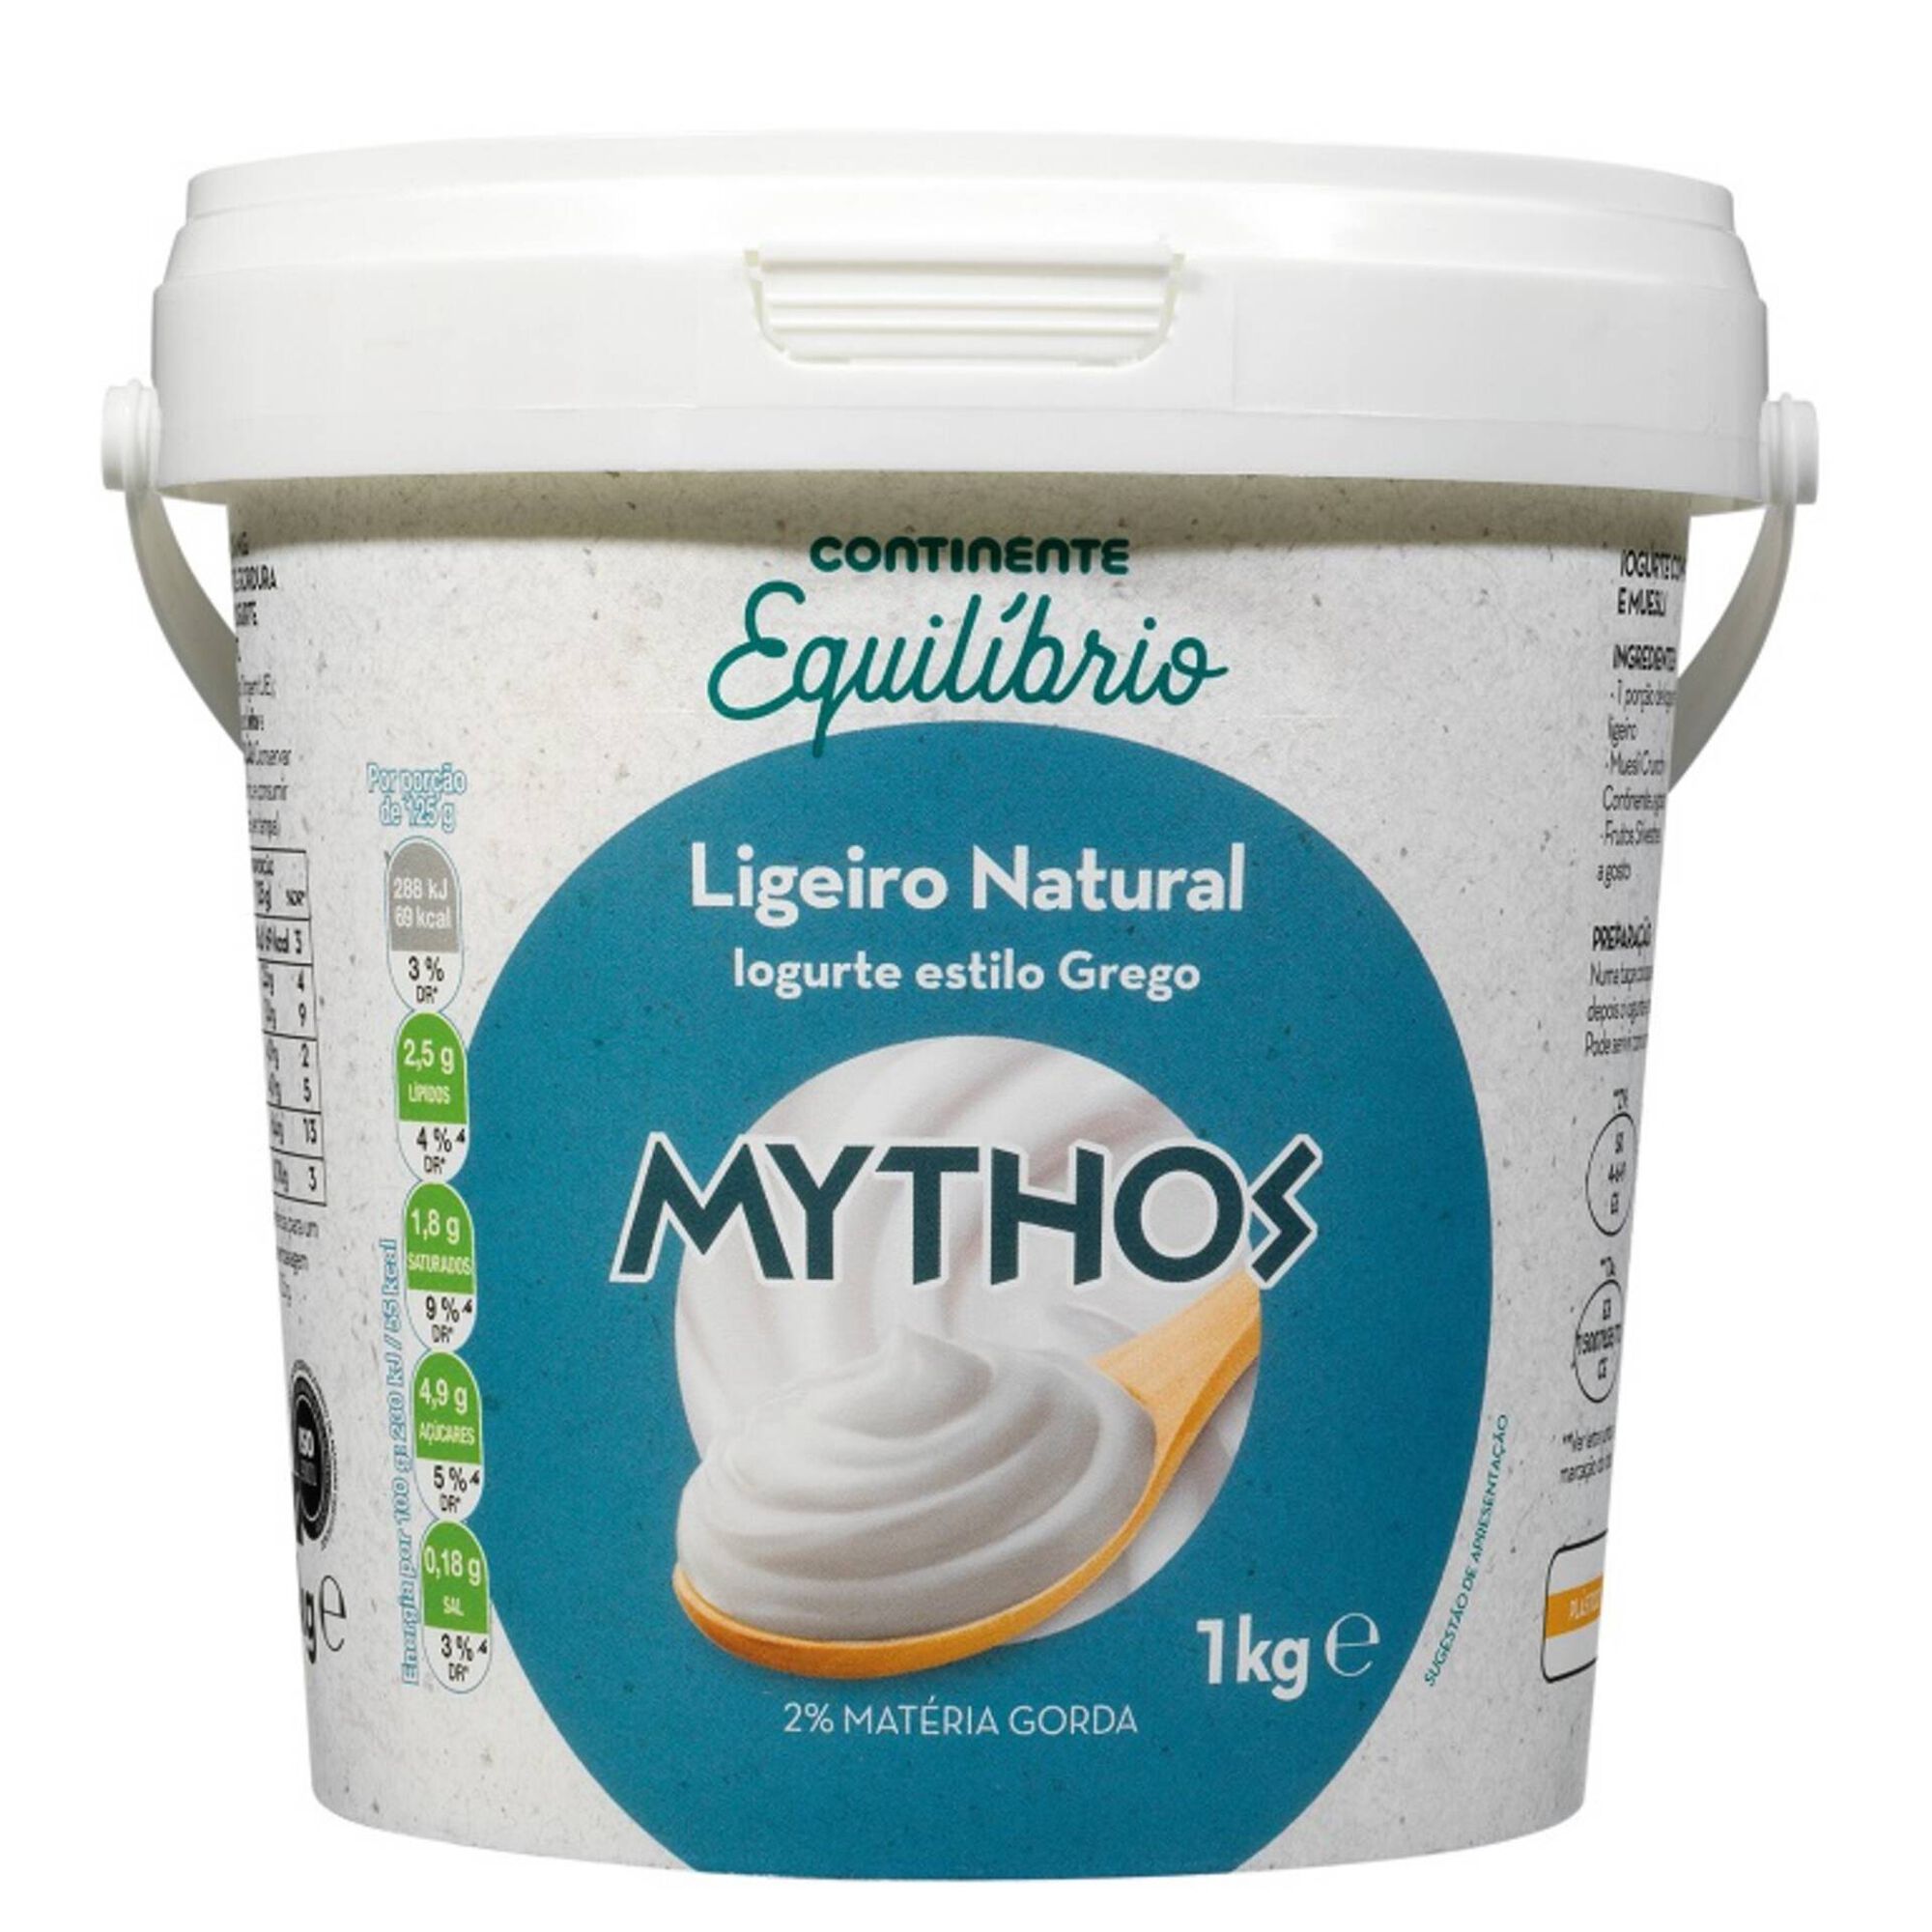 Iogurte Grego Mythos Ligeiro Natural